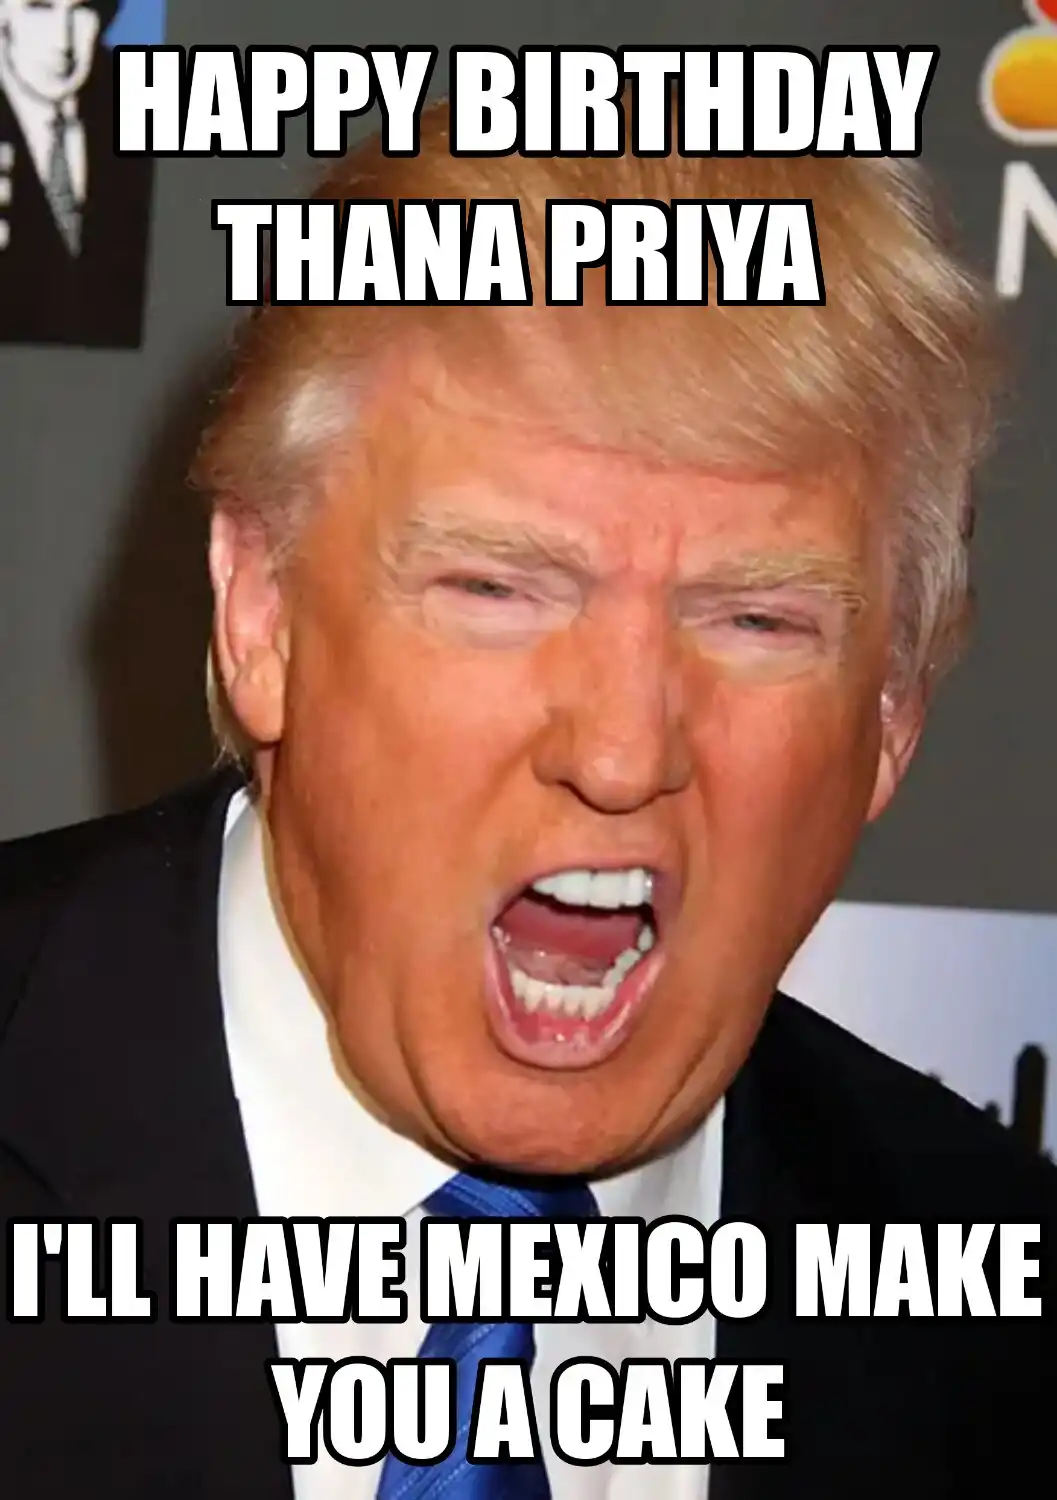 Happy Birthday Thana priya Mexico Make You A Cake Meme